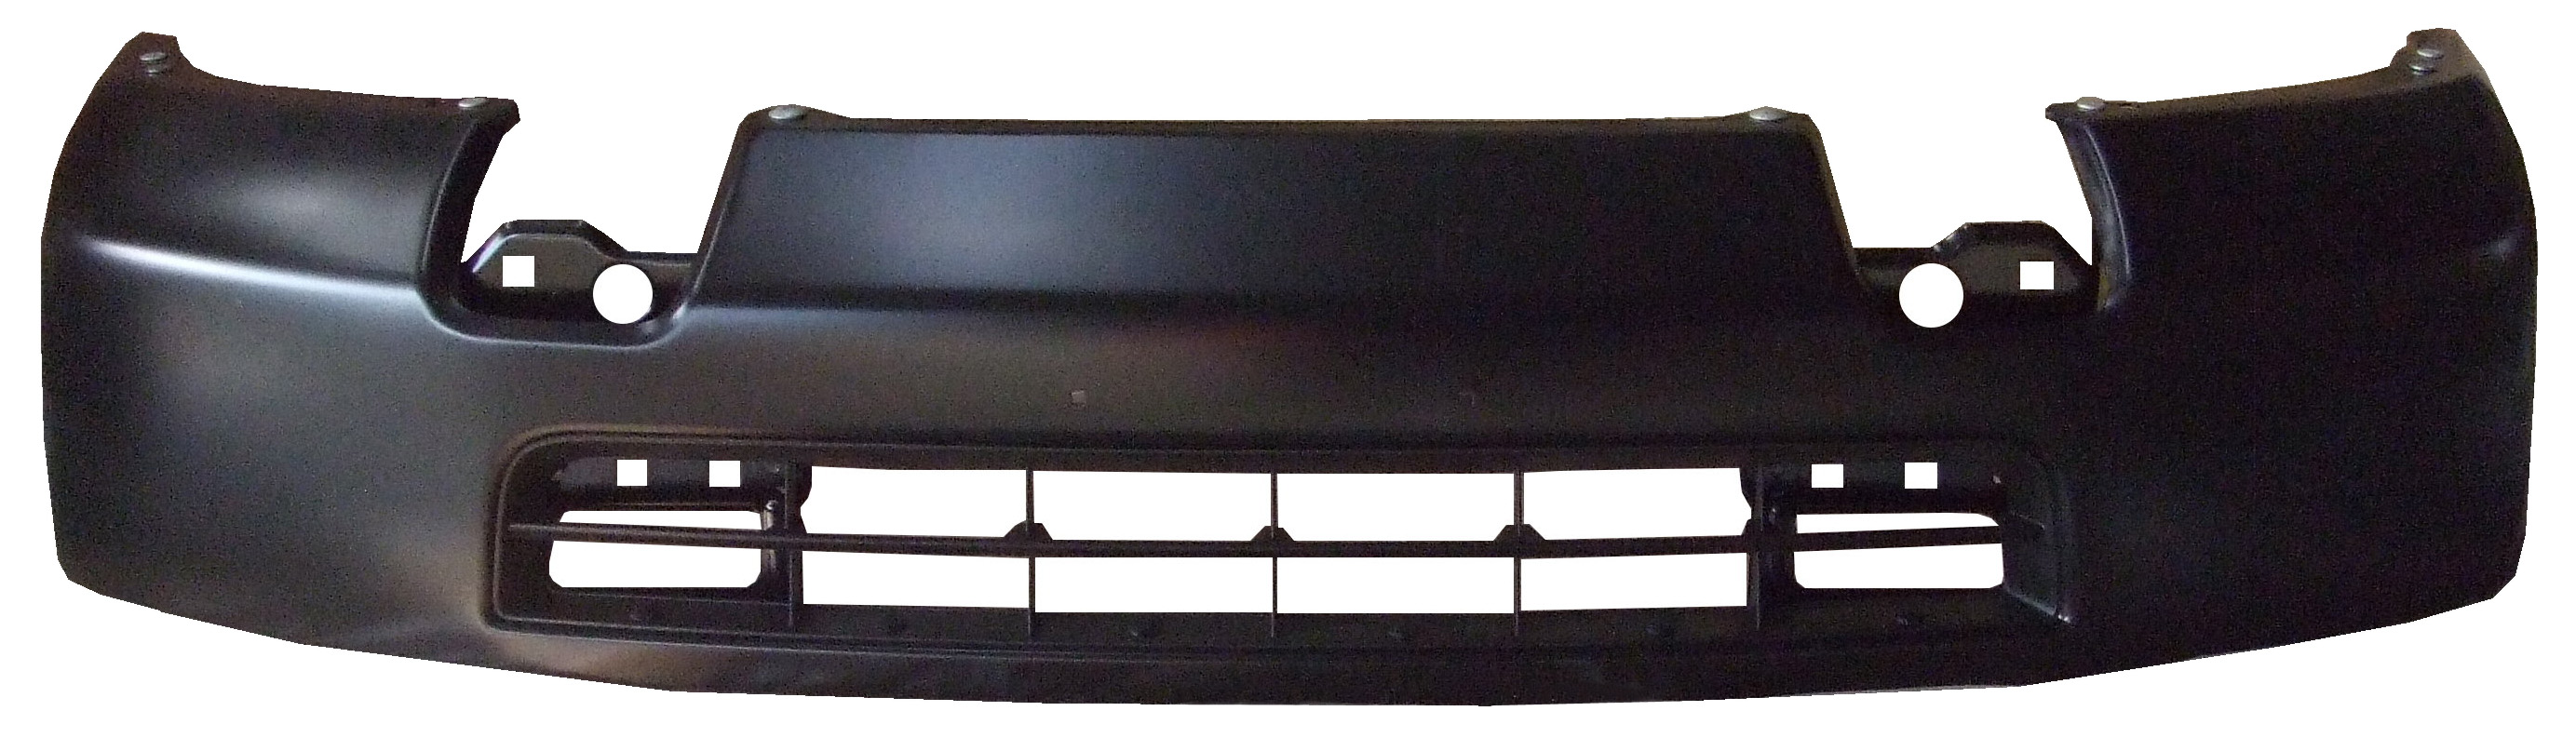 Aftermarket METAL FRONT BUMPERS for NISSAN - NV2500, NV2500,12-21,Front bumper face bar